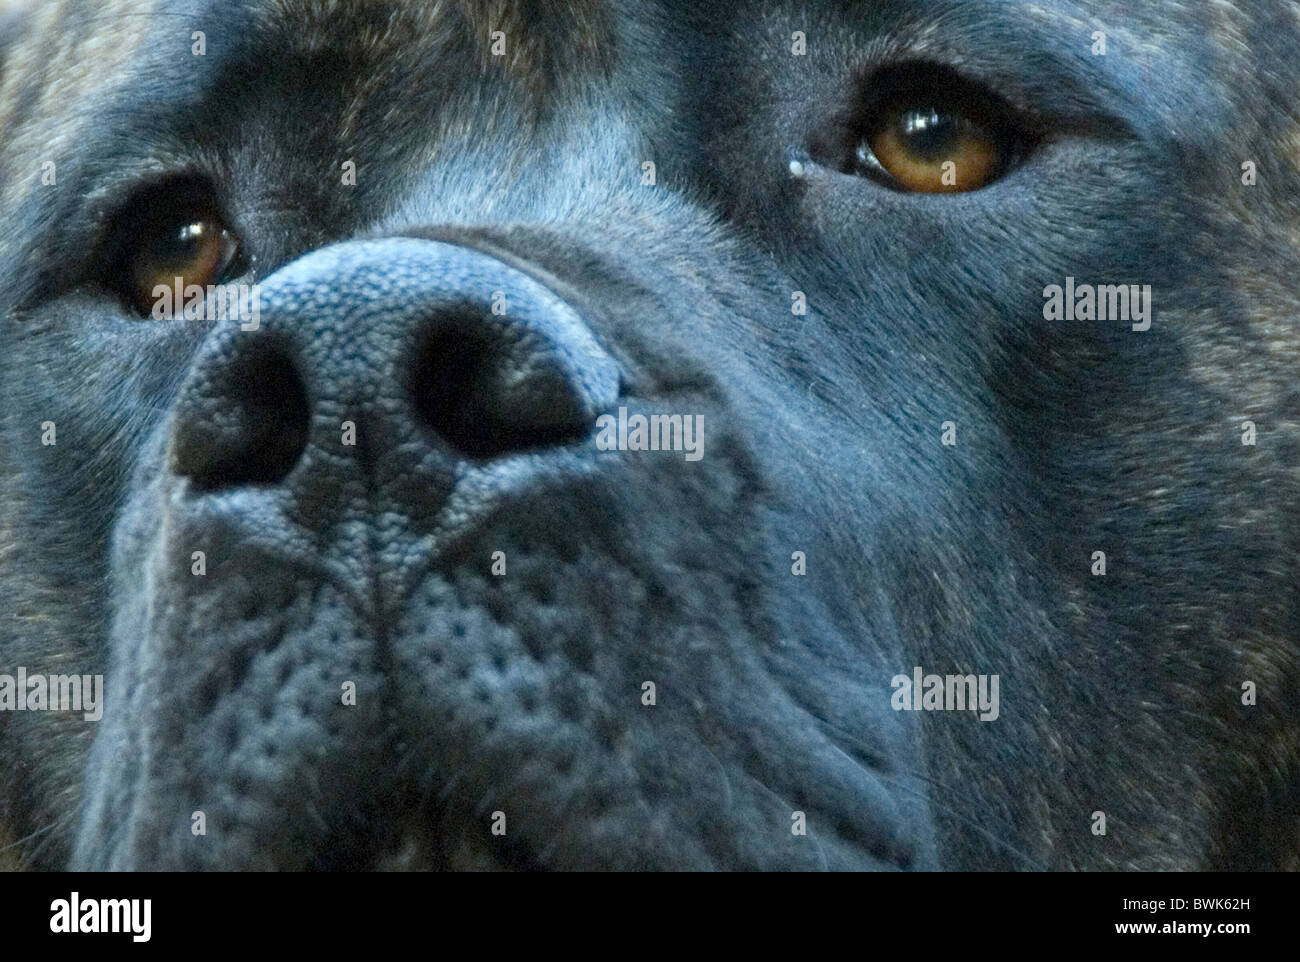 mastiff dog house dog portrait British breed face eyes nose animal Stock Photo